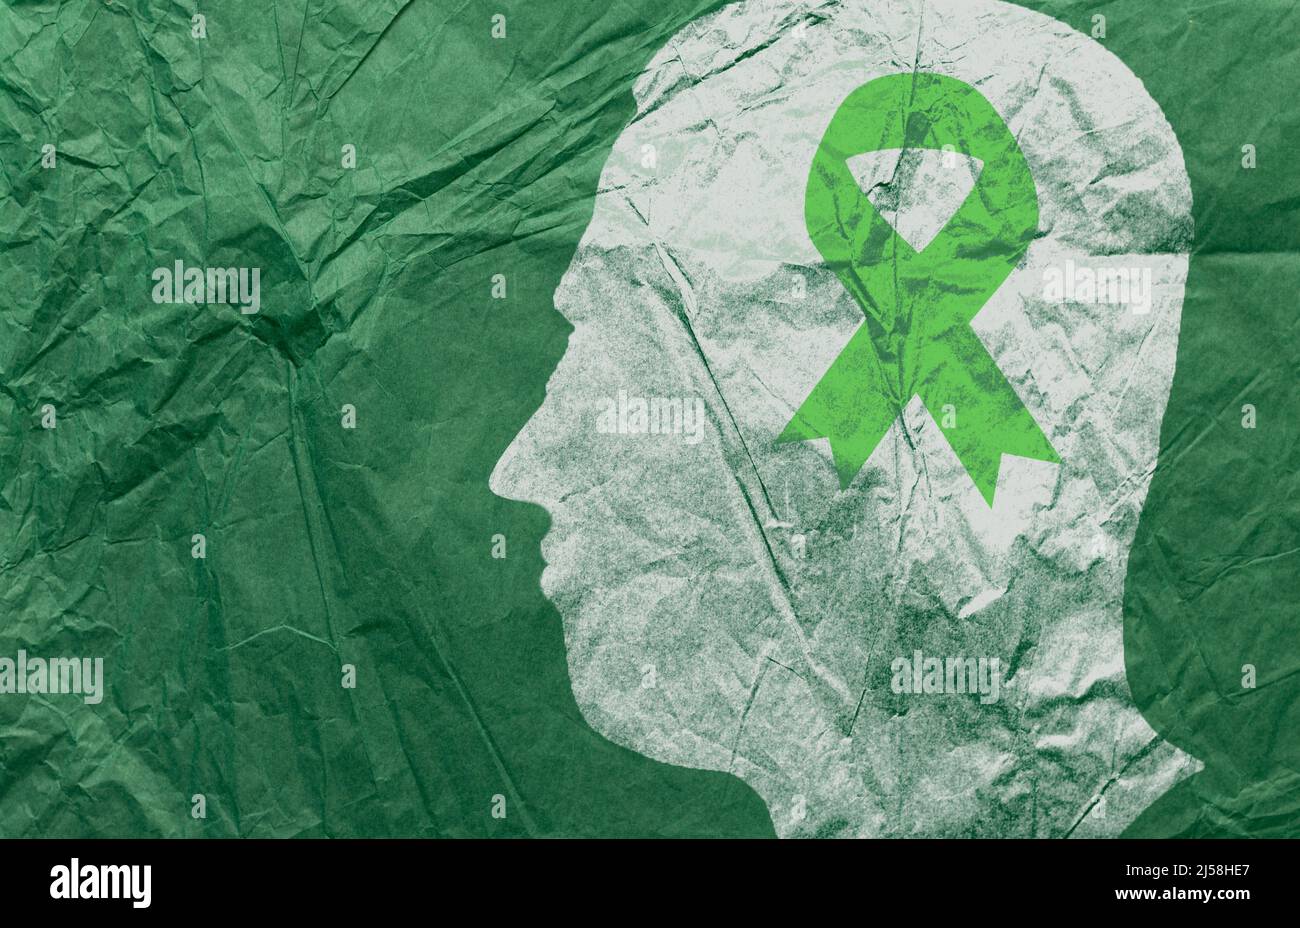 Männliche Kopf Silhouette und grünes Band Papier. Konzept des Monats des Bewusstseins für psychische Gesundheit. Als Symbol der Diognose und Prävention von psychischen Störungen. Stockfoto